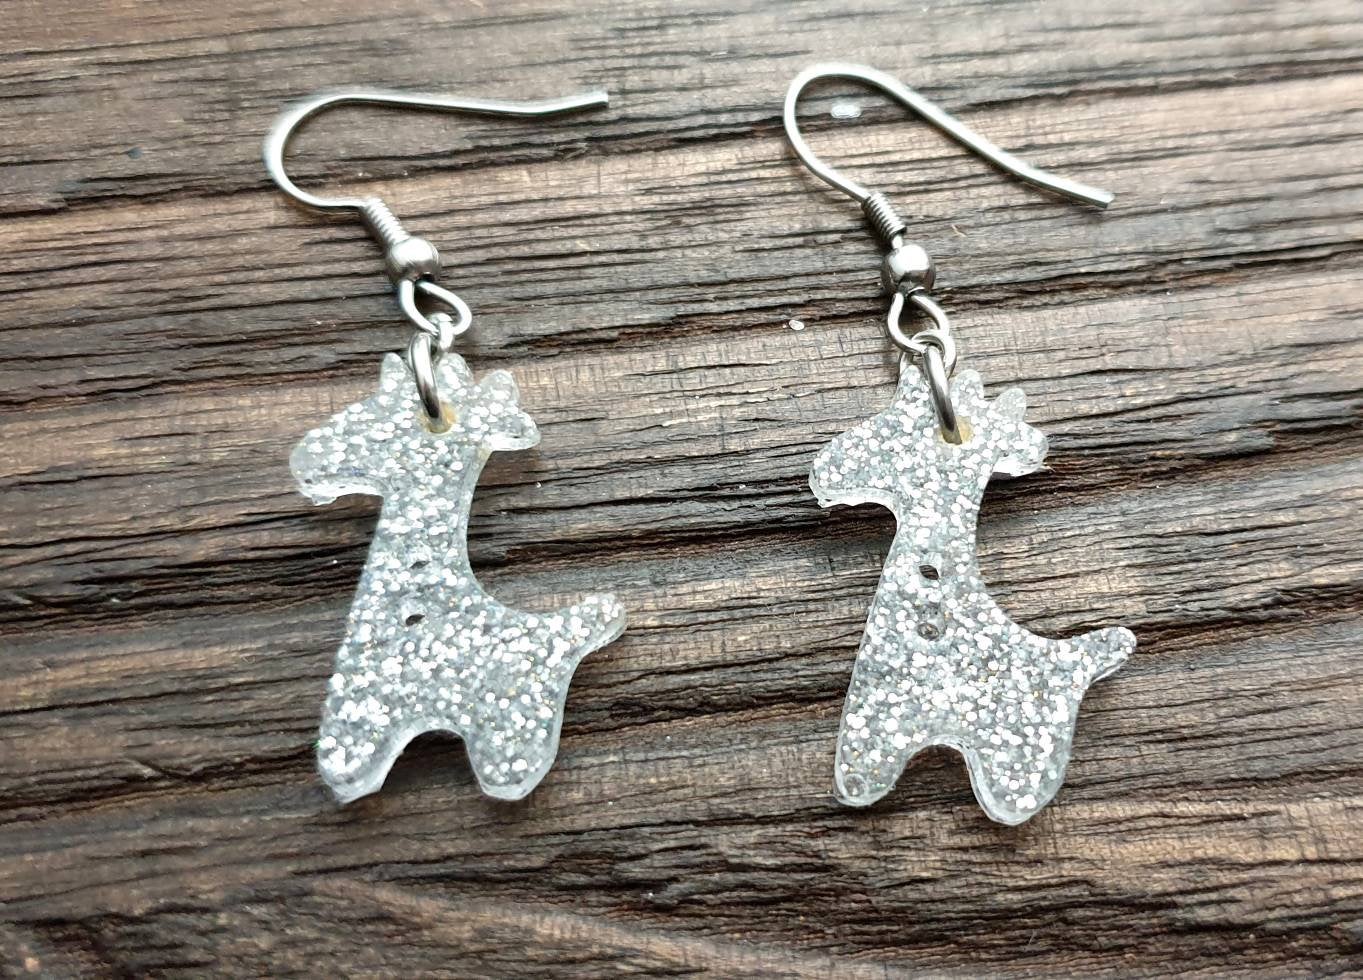 Giraffe Dangle Earrings, Silver Glitter Resin Stainless Steel Earrings.